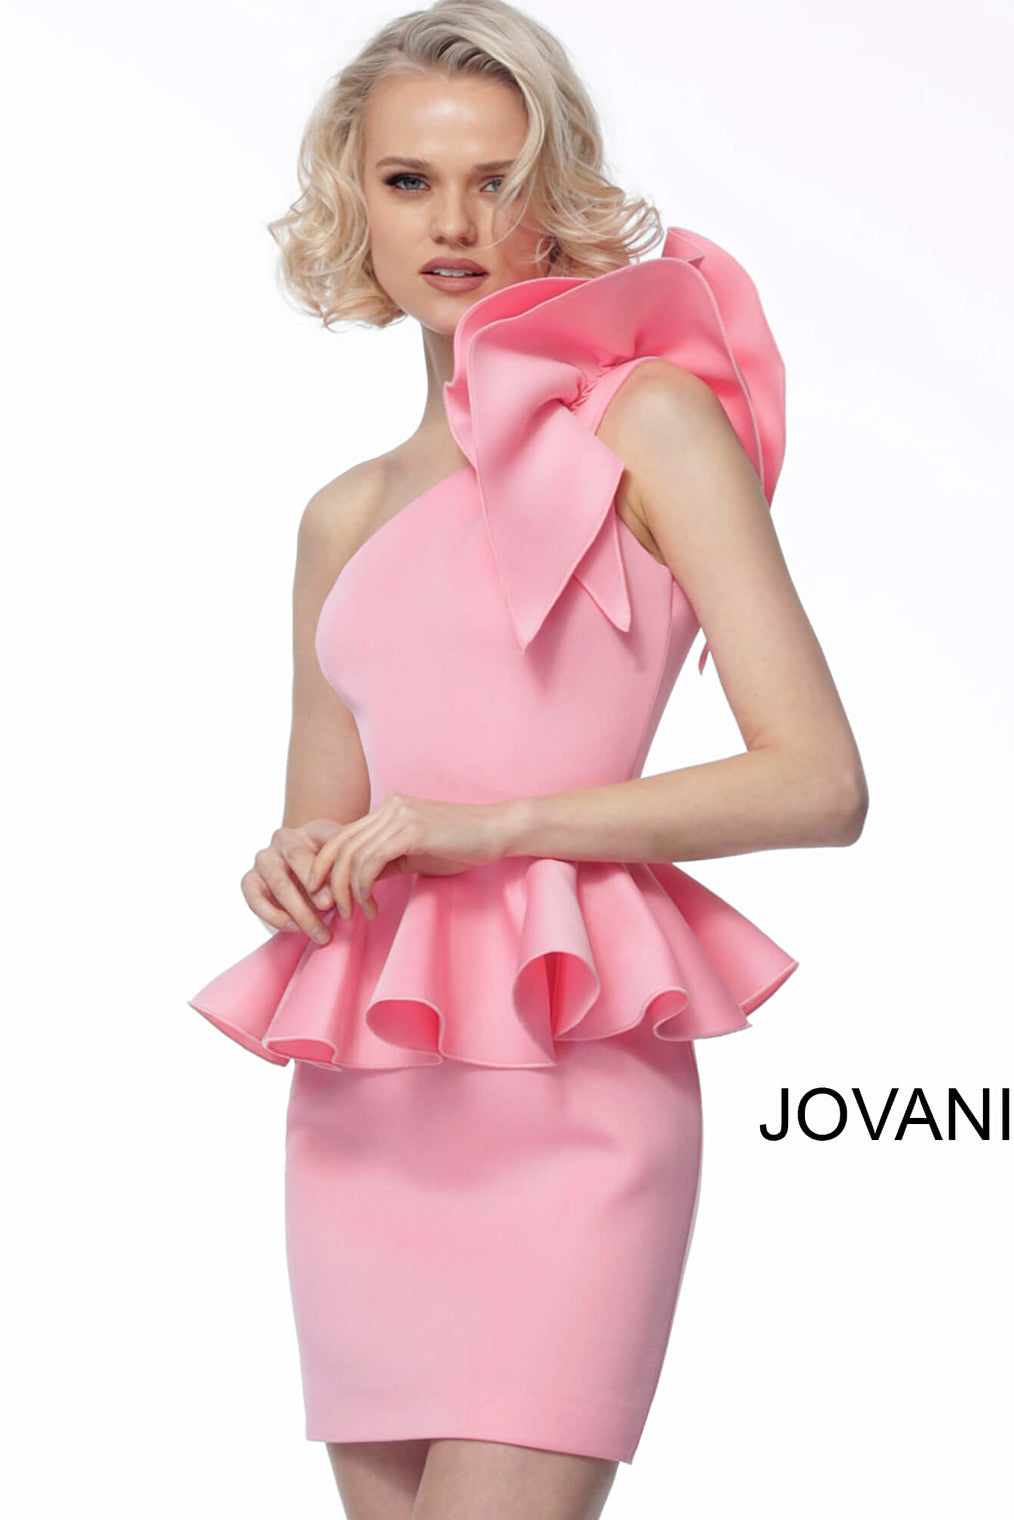 Jovani one-shoulder pink short dress 1400